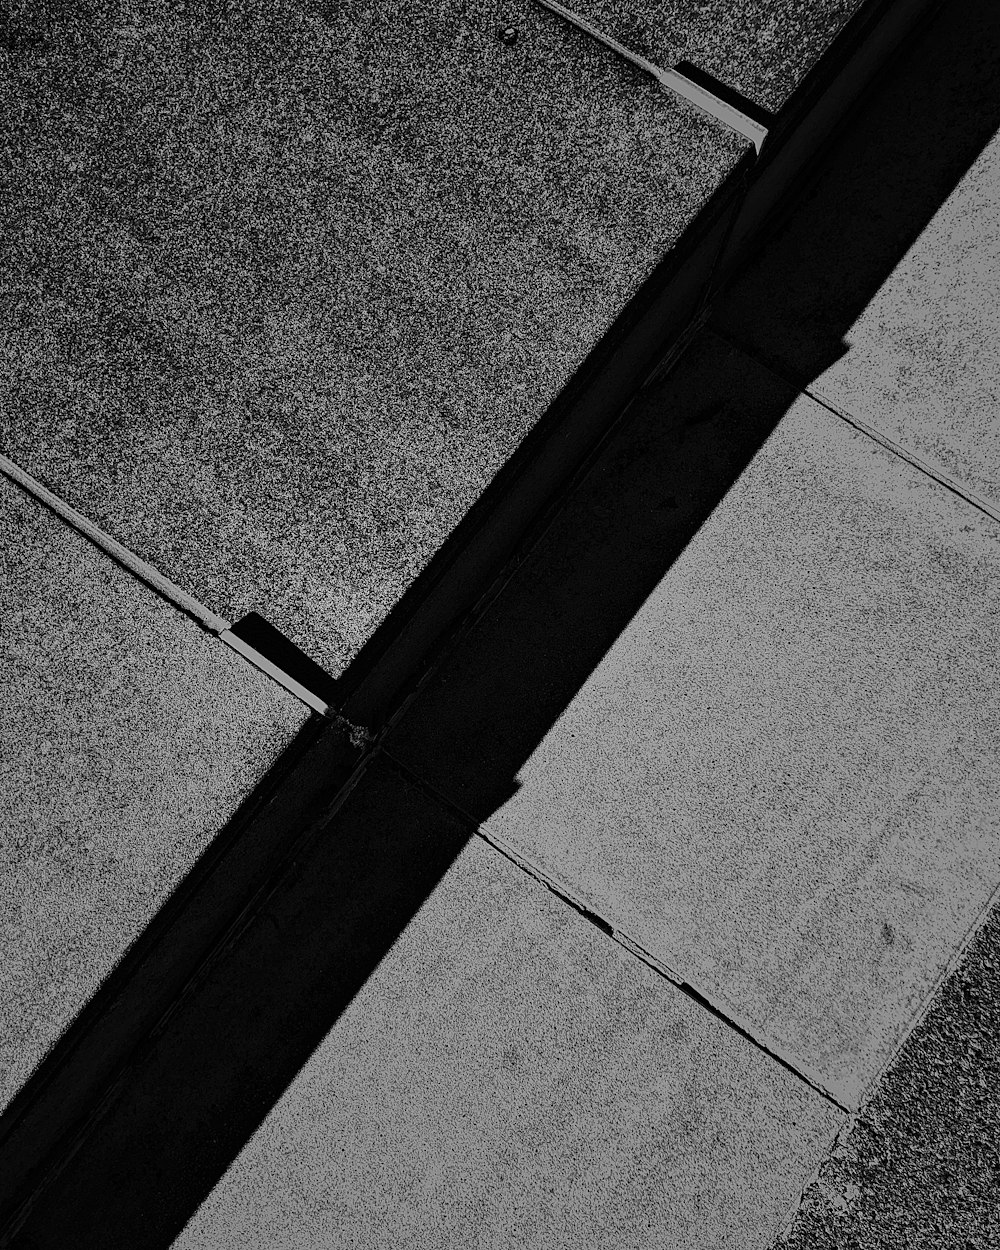 black metal rod on gray concrete pavement